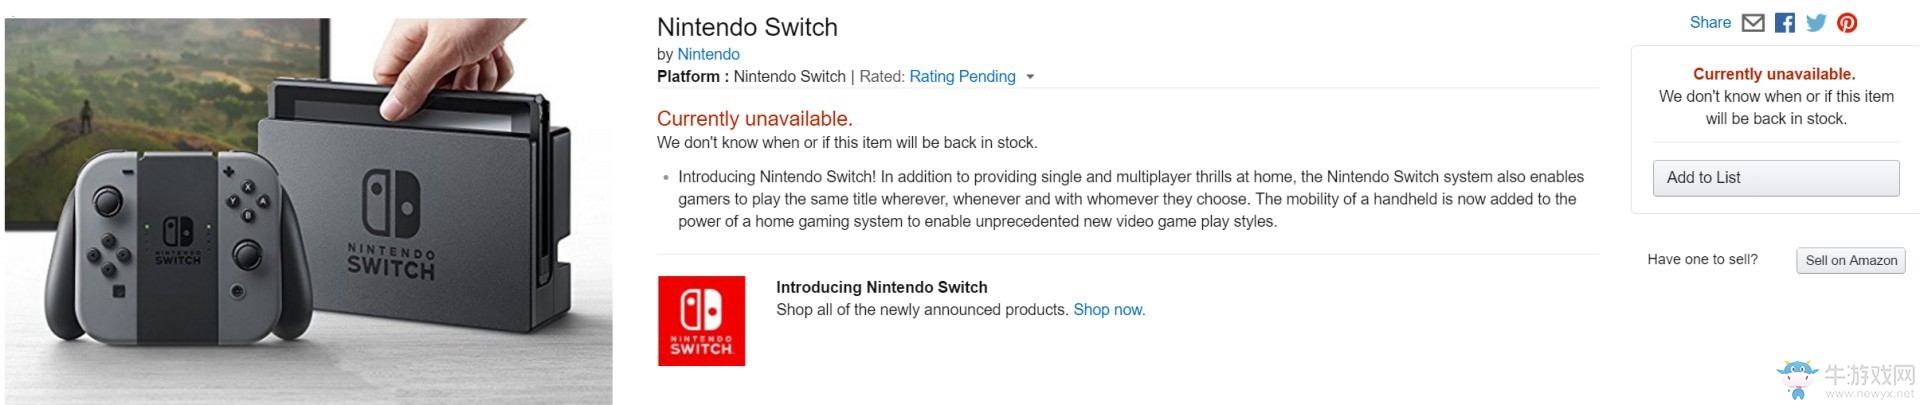 首批任天堂Switch预购竟如此火爆 不按套路出牌啊